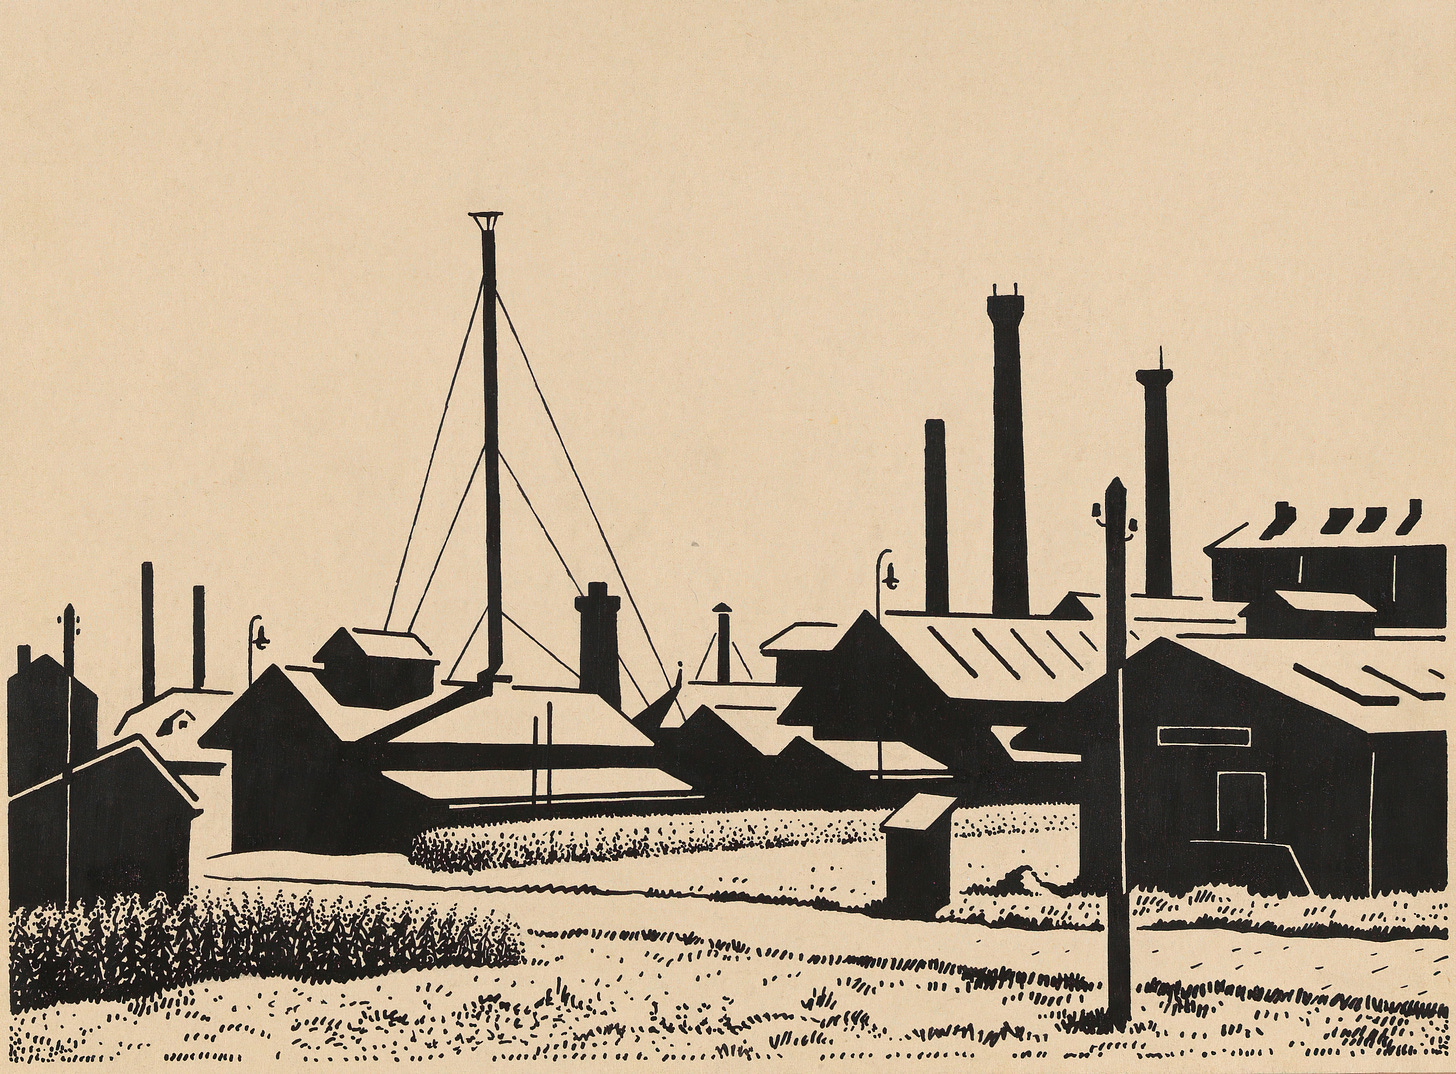 Fabriksanlagen (around 1925) by Karl Wiener